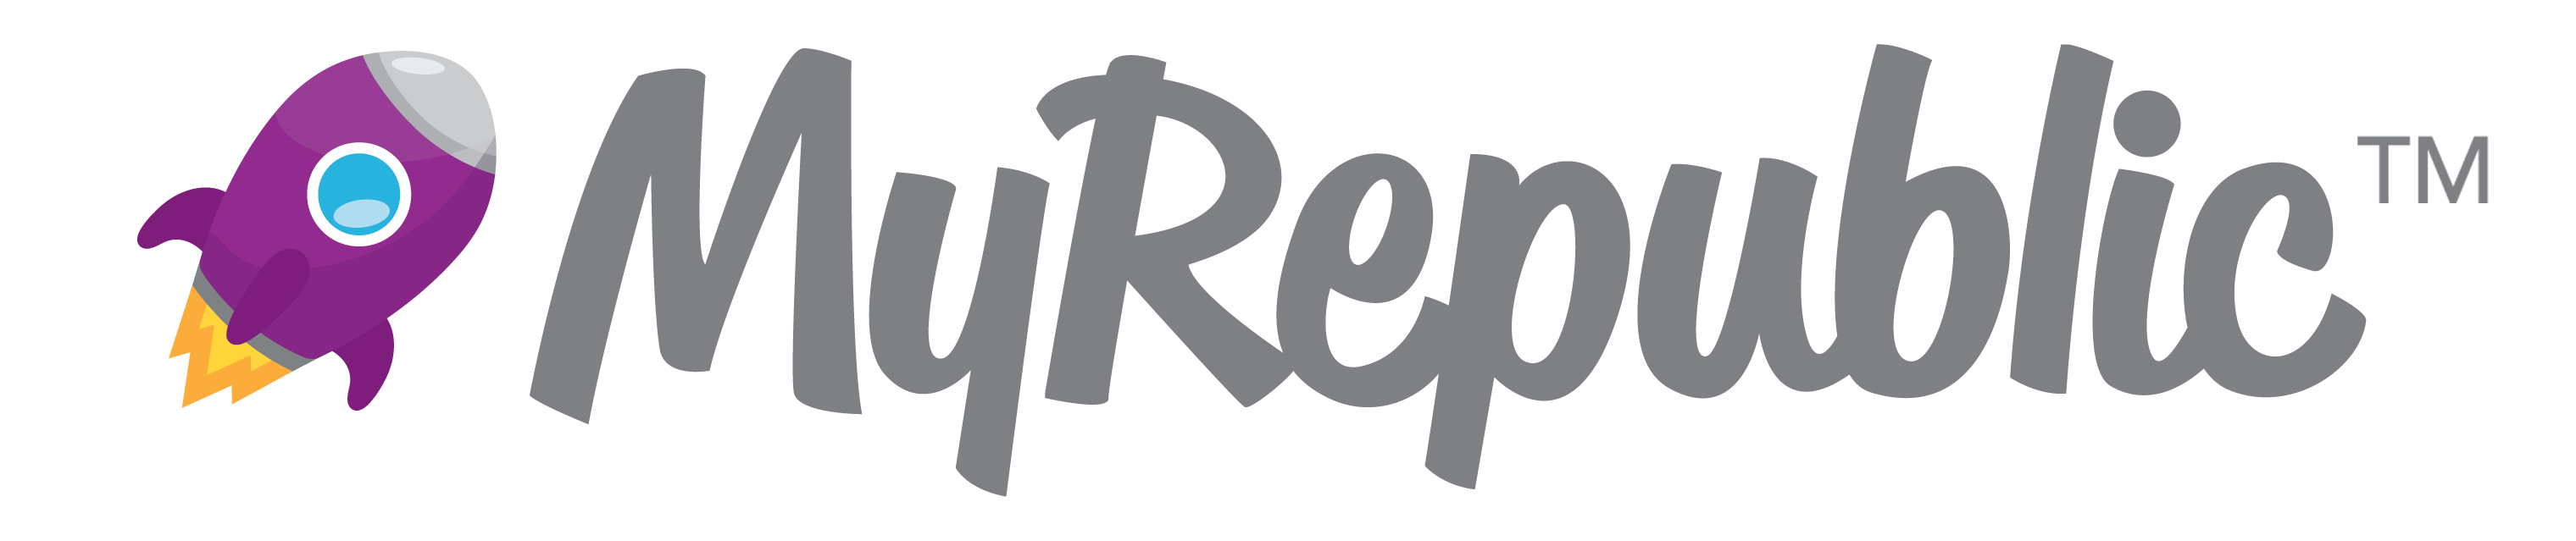 MyRepublic logo